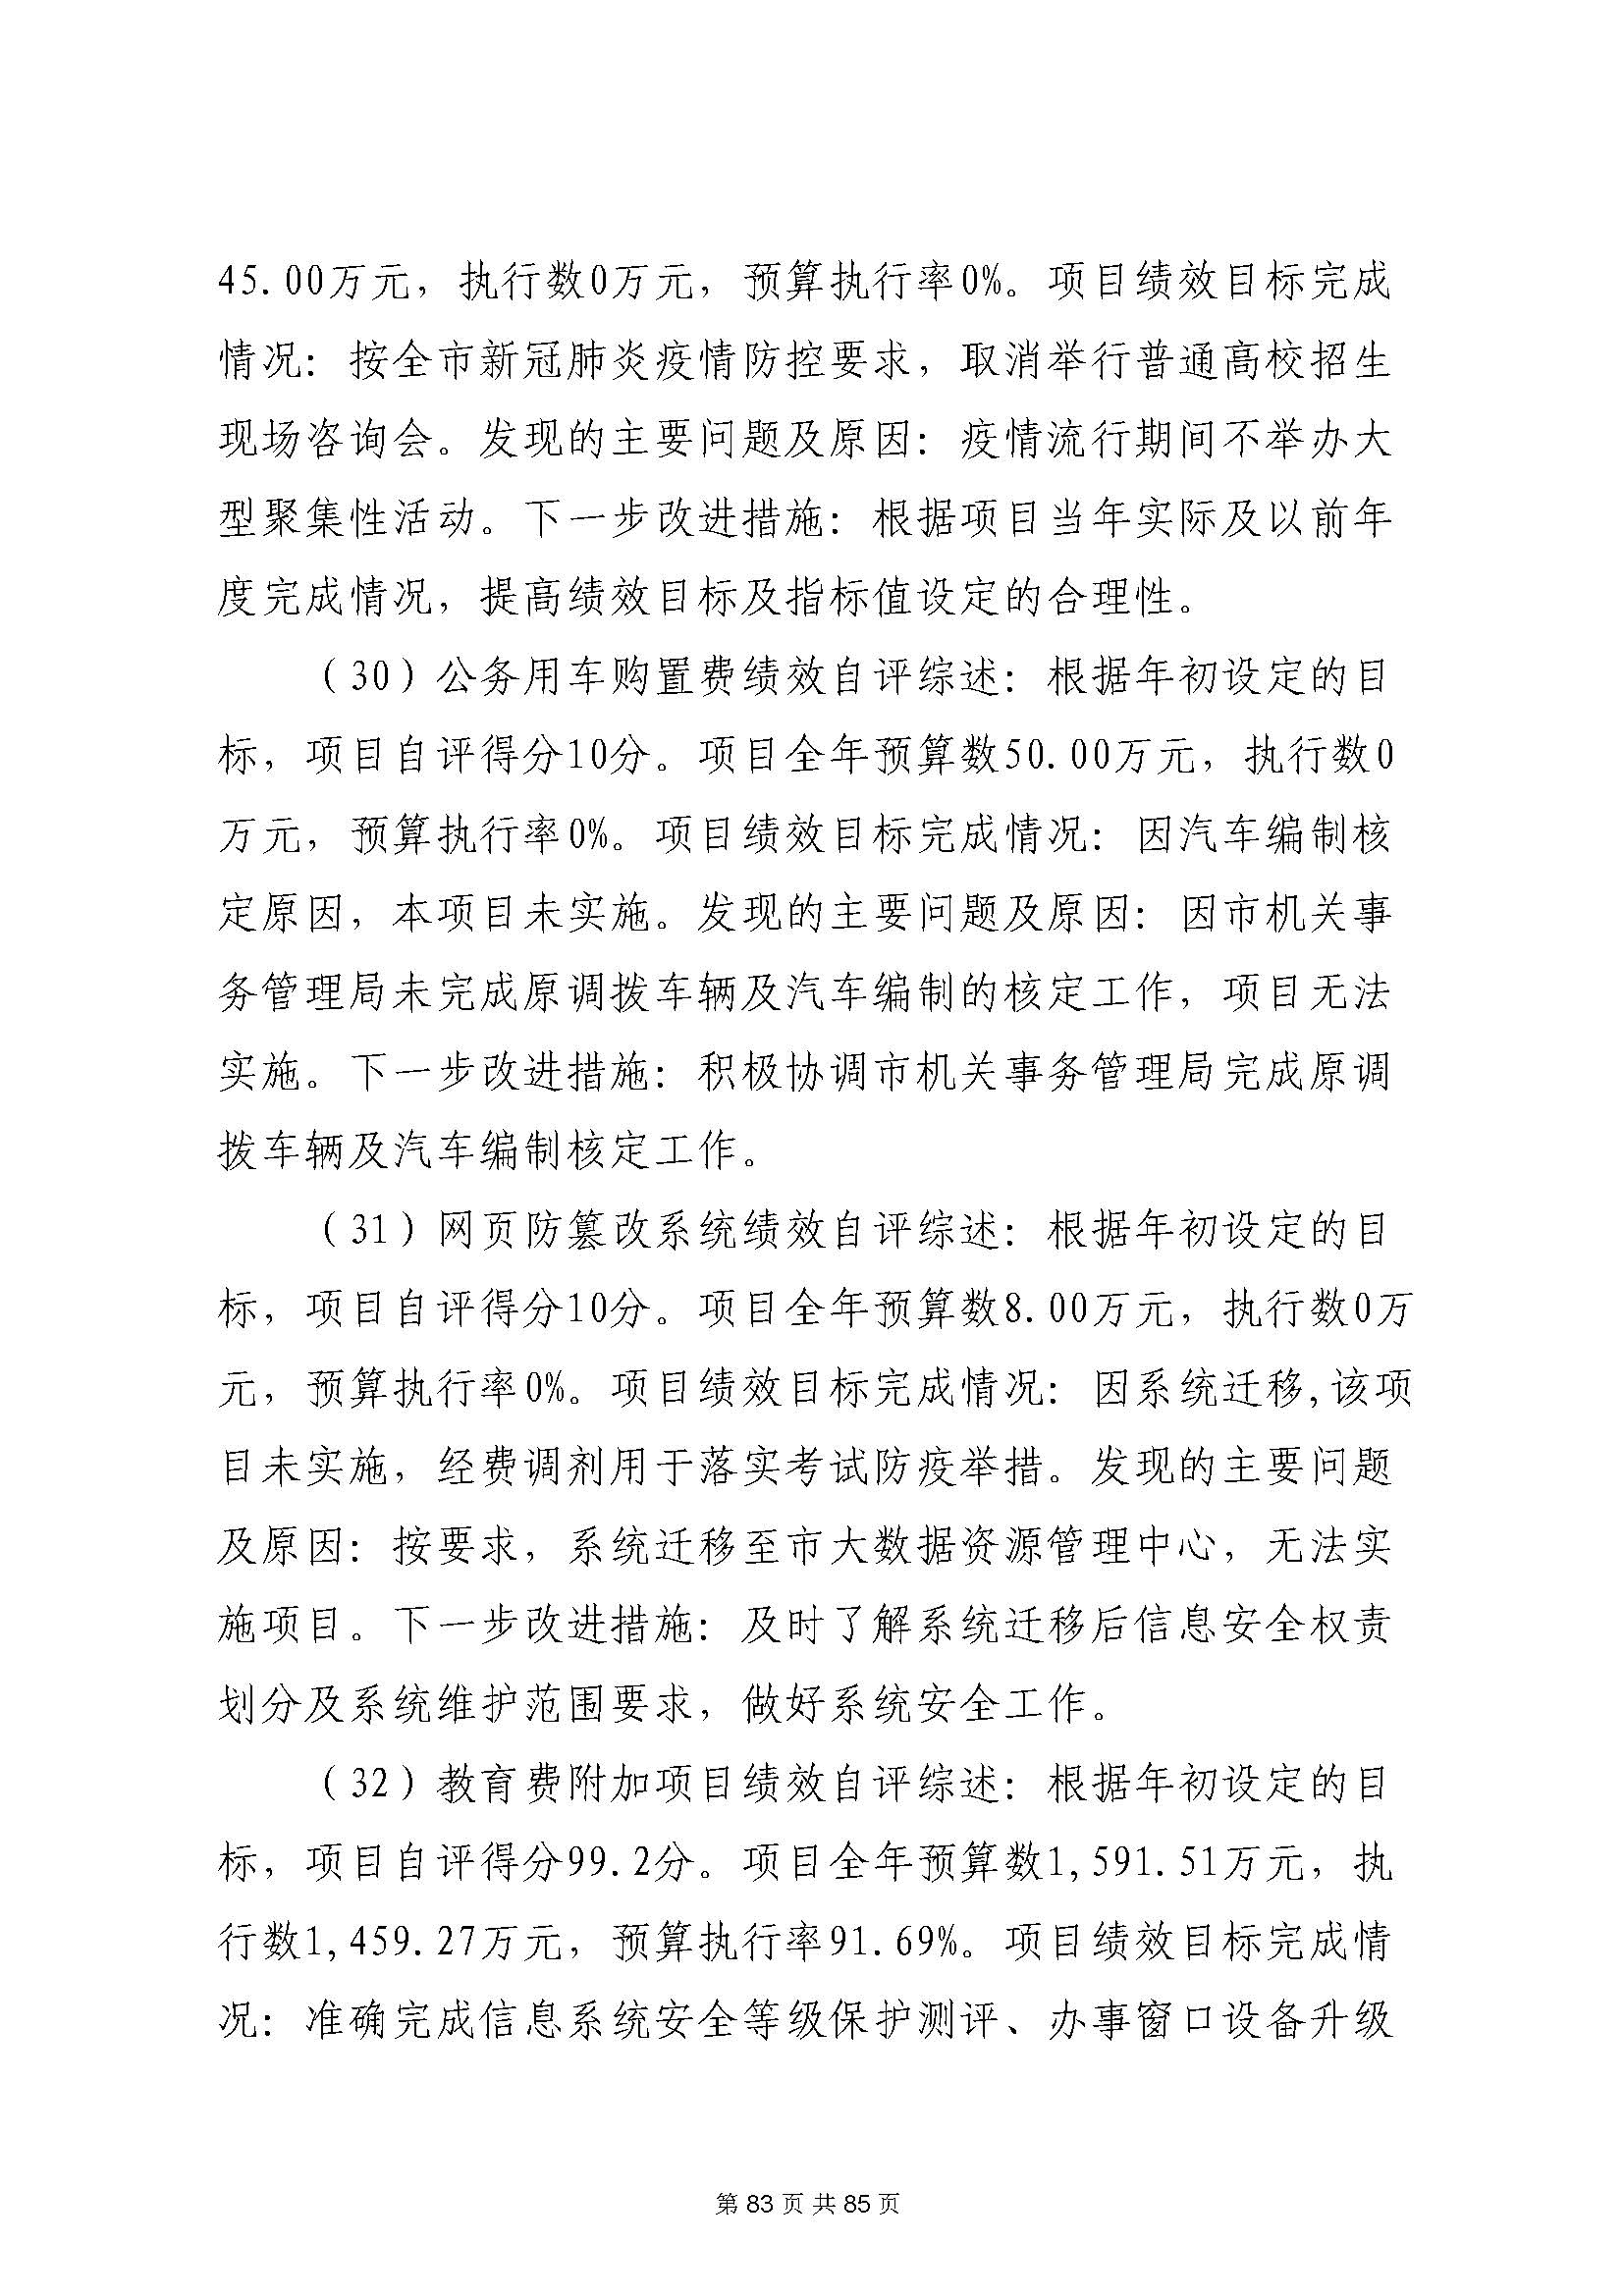 深圳市招生考试办公室2020年度部门决算_页面_84.jpg